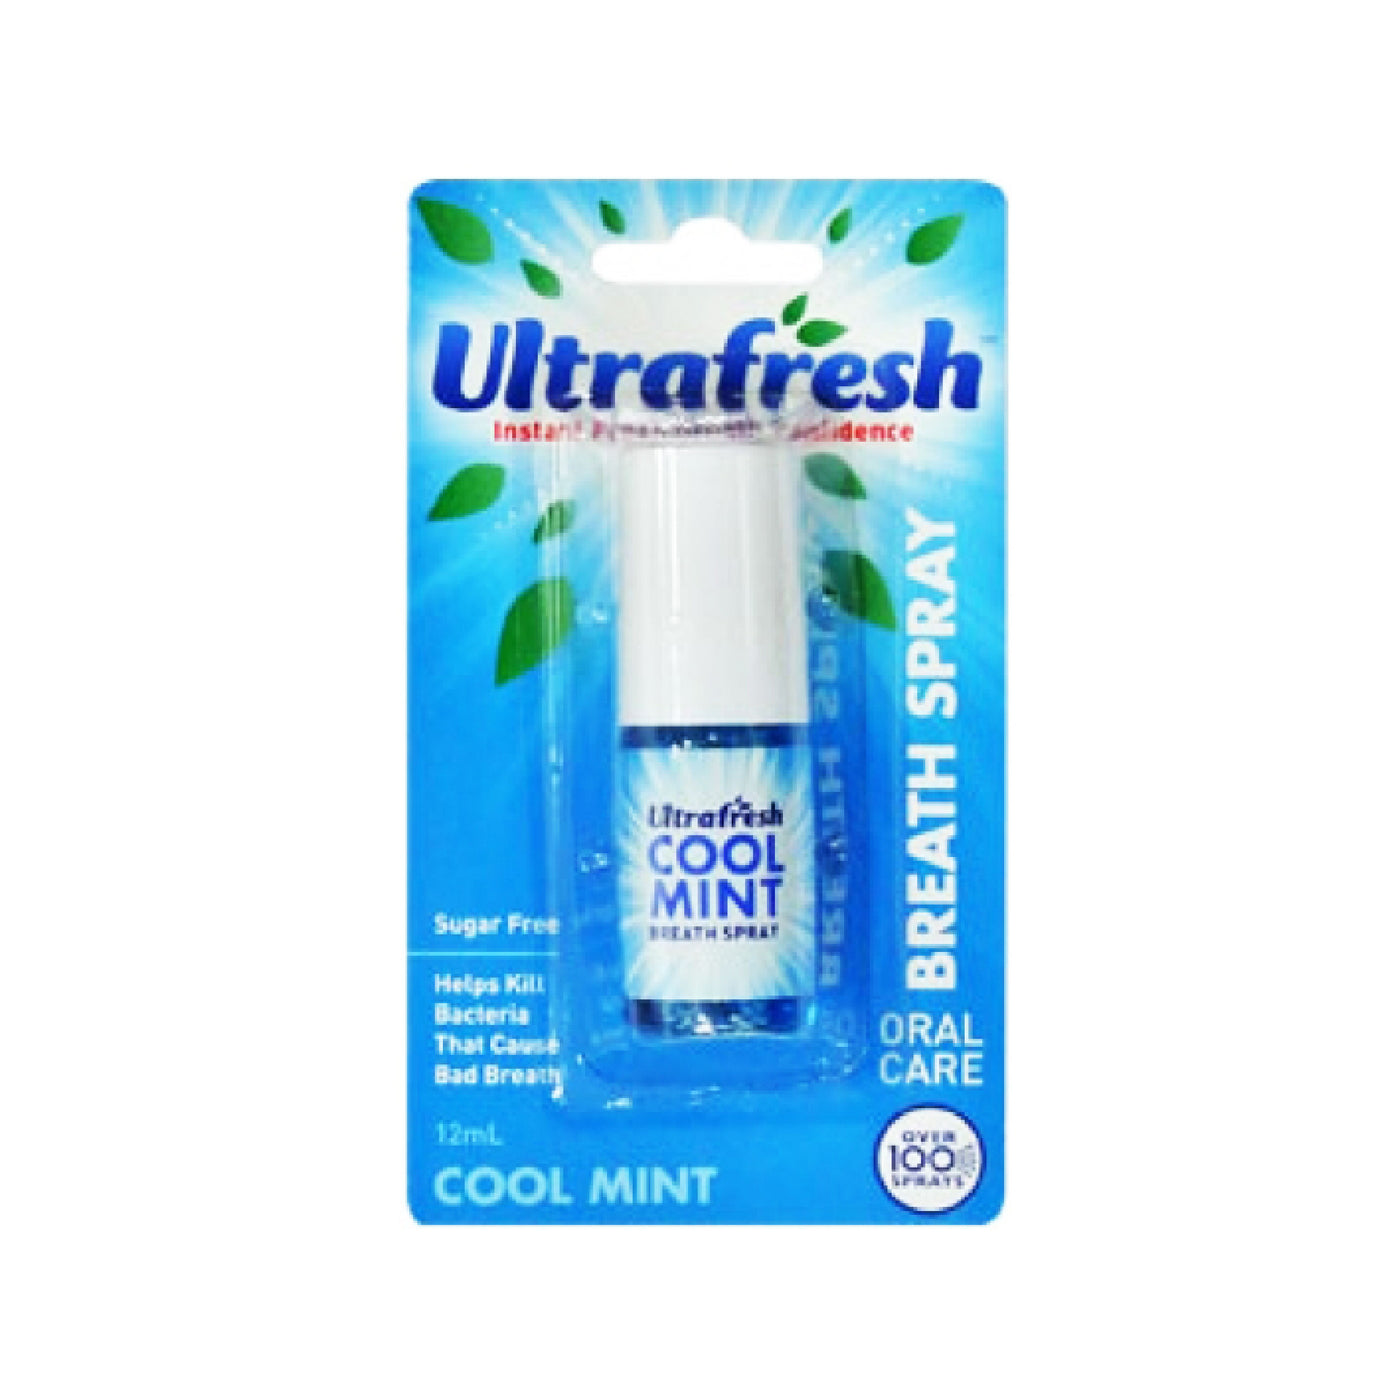 ULTRAFRESH BREATH SPRAY (BLUE) 12ml